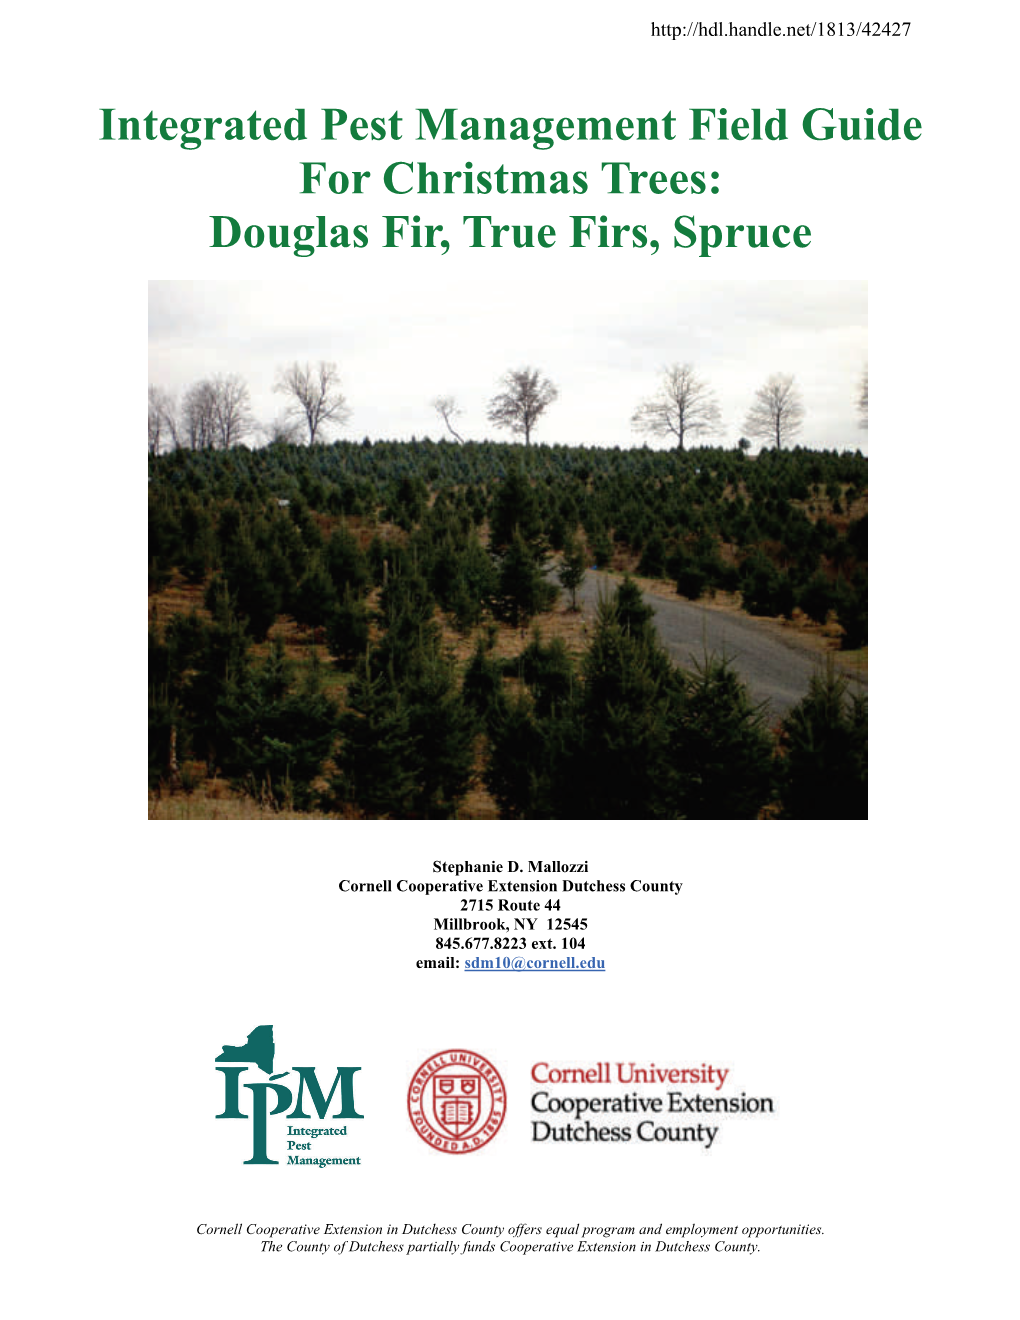 Christmas Trees: Douglas Fir, True Firs, Spruce